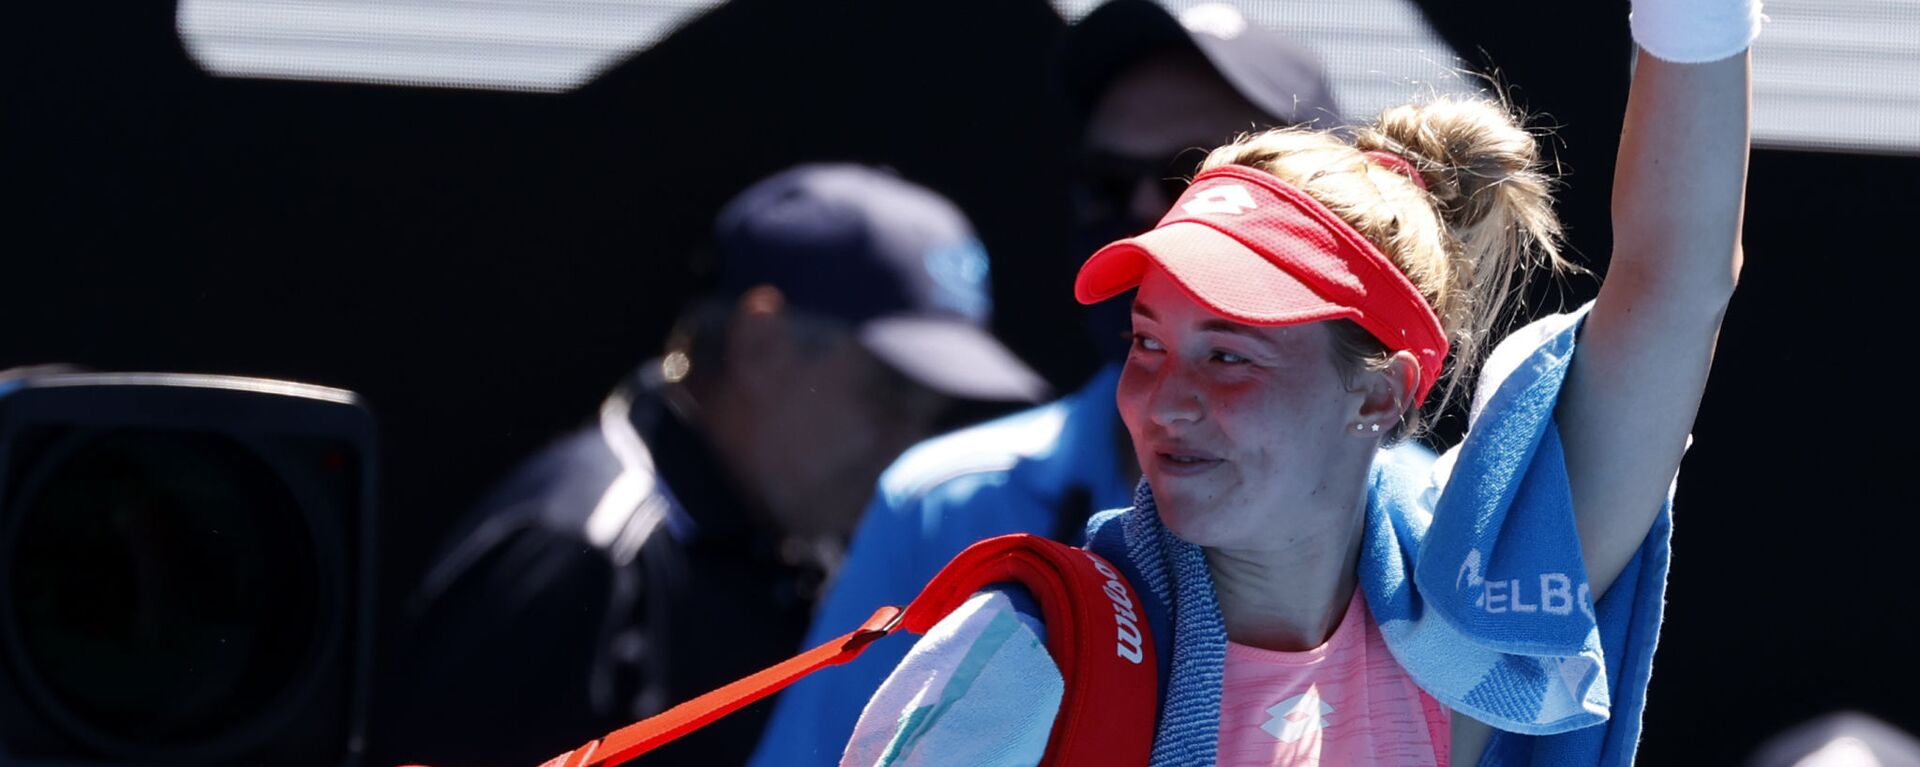 Srpska teniserka Nina Stojanović posle poraza od Serene Vilijams na Australijan openu 2021. - Sputnik Srbija, 1920, 24.07.2021